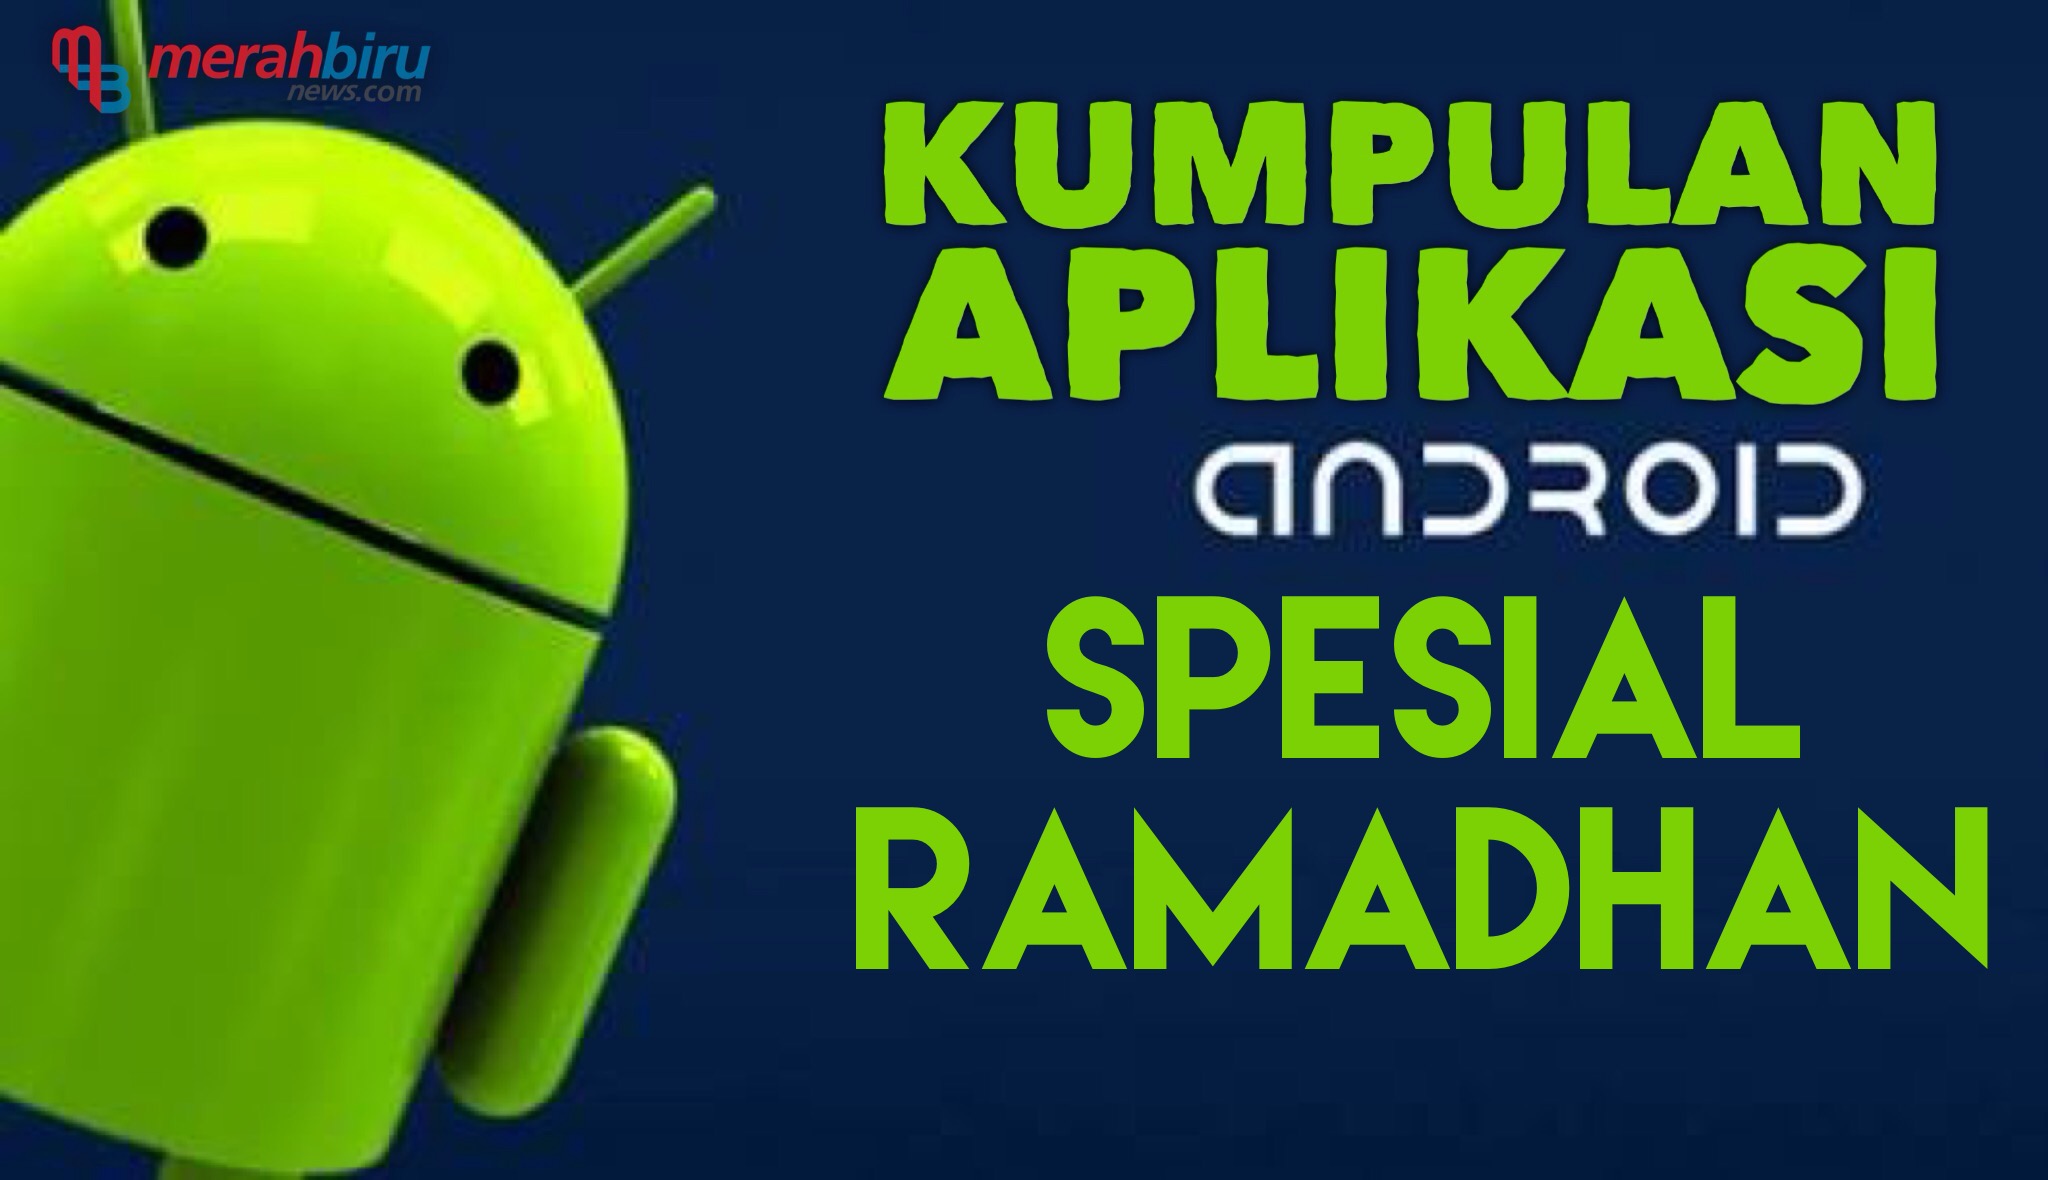 Kumpulan Aplikasi Android Spesial Puasa Ramadhan